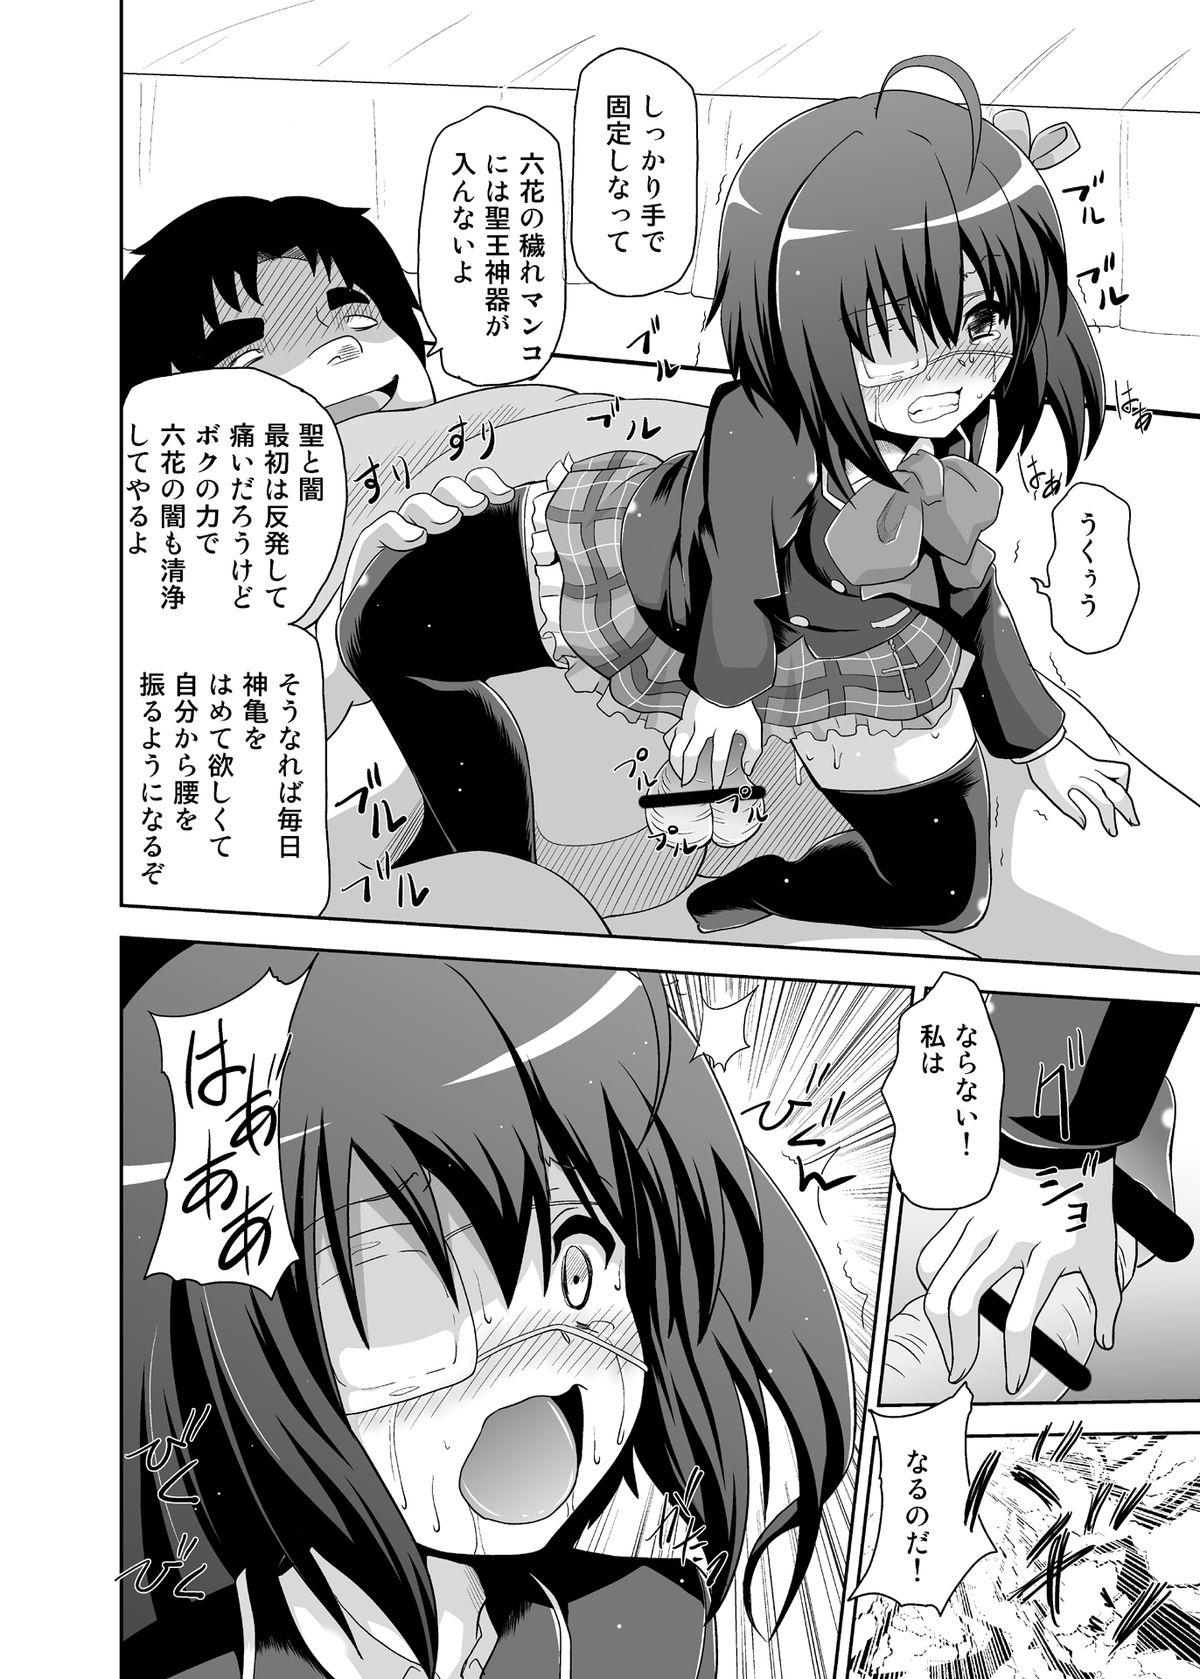 Peitos Zutto Issho - Chuunibyou demo koi ga shitai Girl Gets Fucked - Page 11